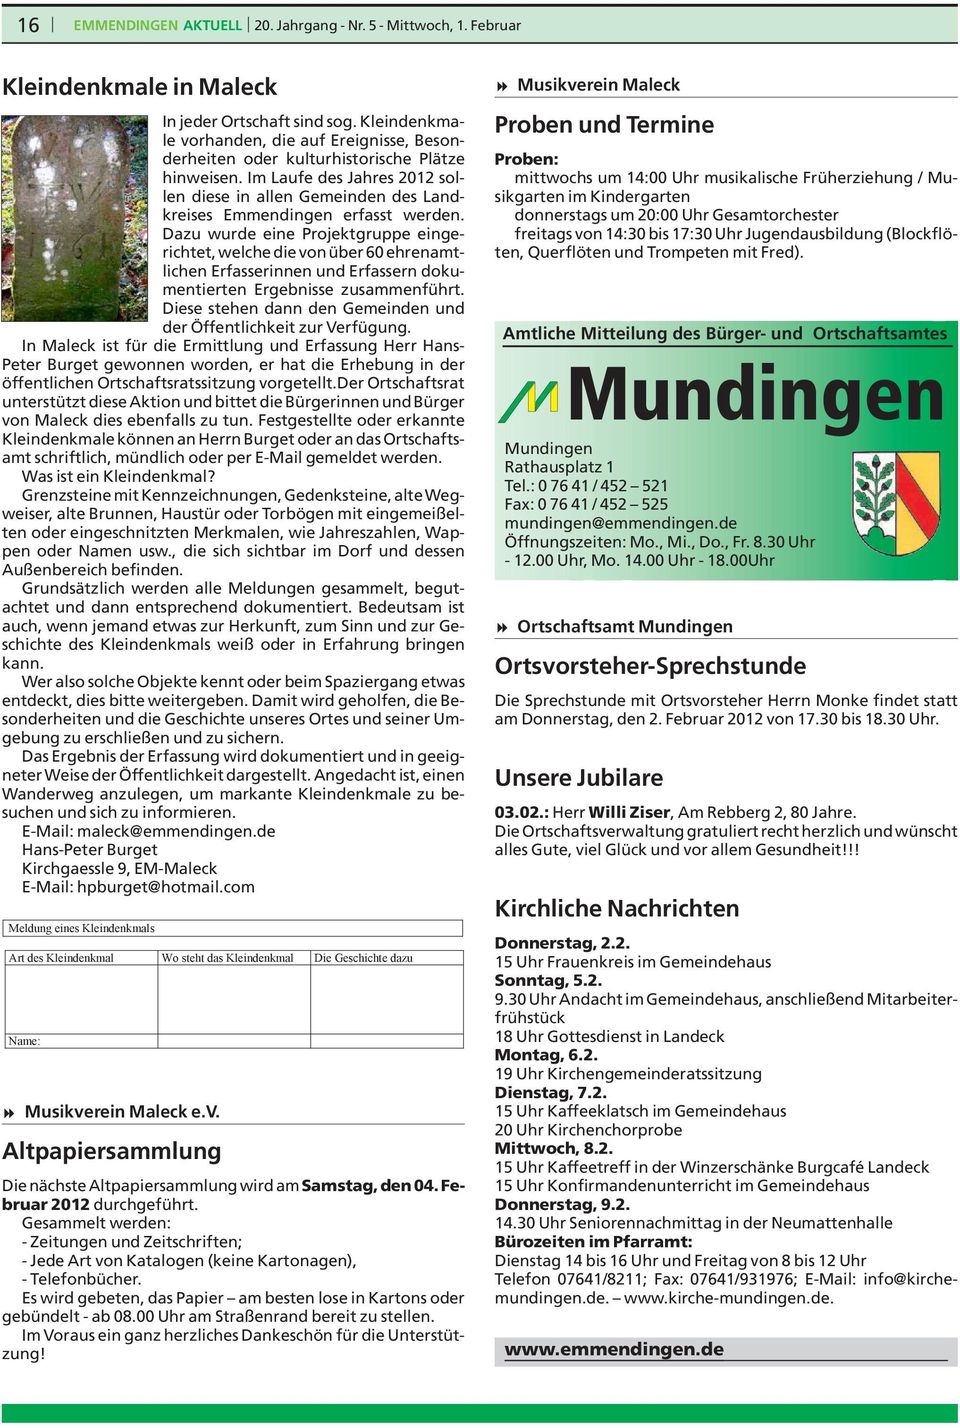 Im Laufe des Jahres 2012 sollen diese in allen Gemeinden des Landkreises Emmendingen erfasst werden.